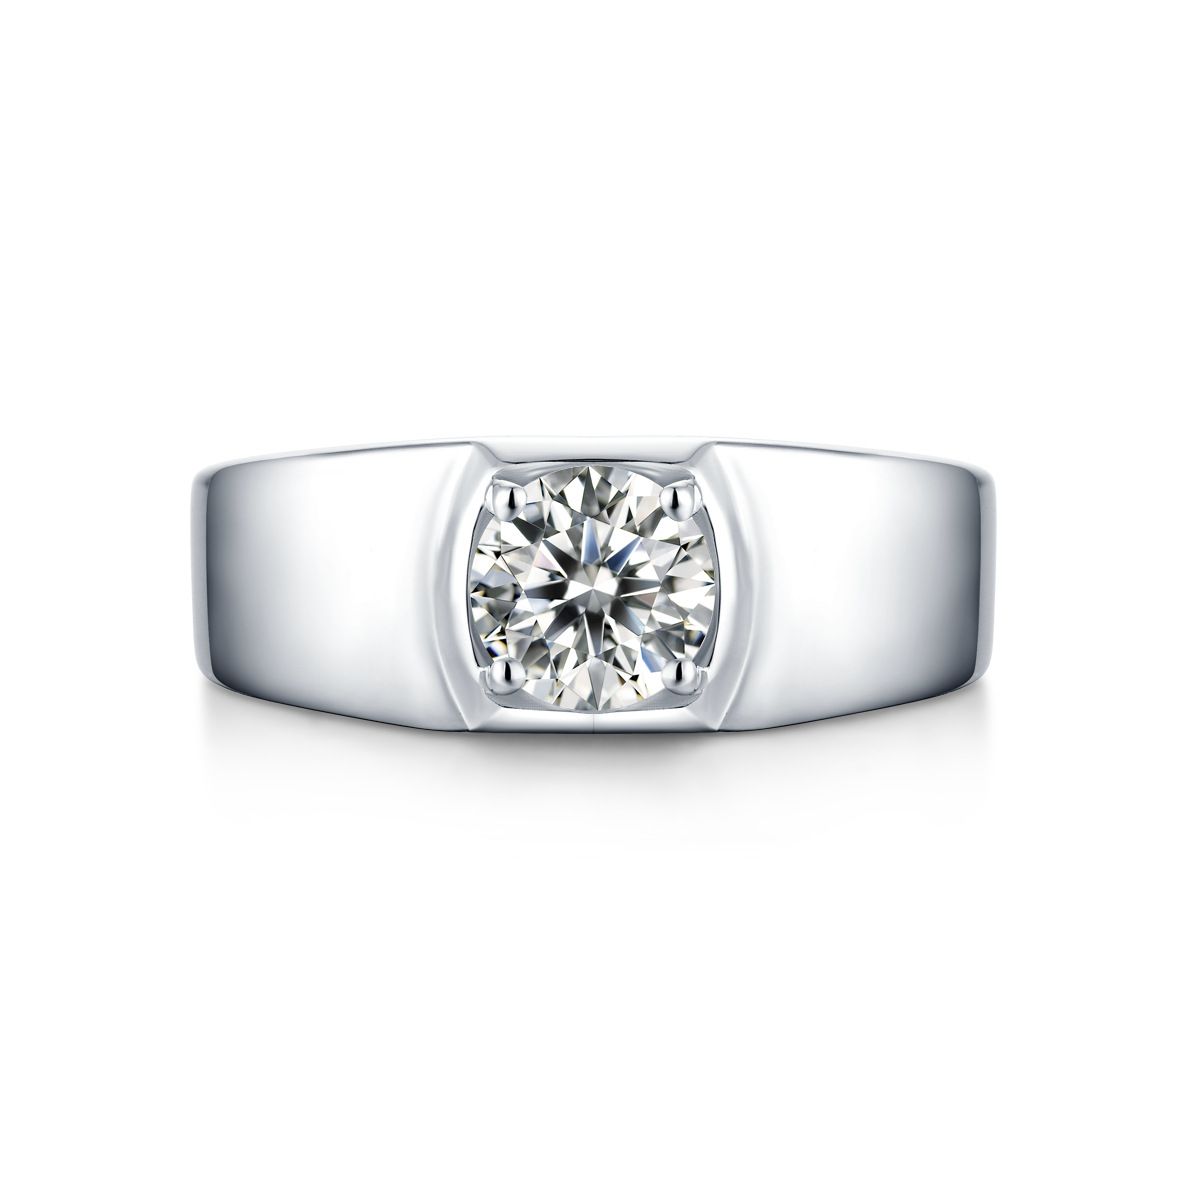 Ring for men, evil eye coin ring, silver men's ring, gift for him, adj –  Shani & Adi Jewelry